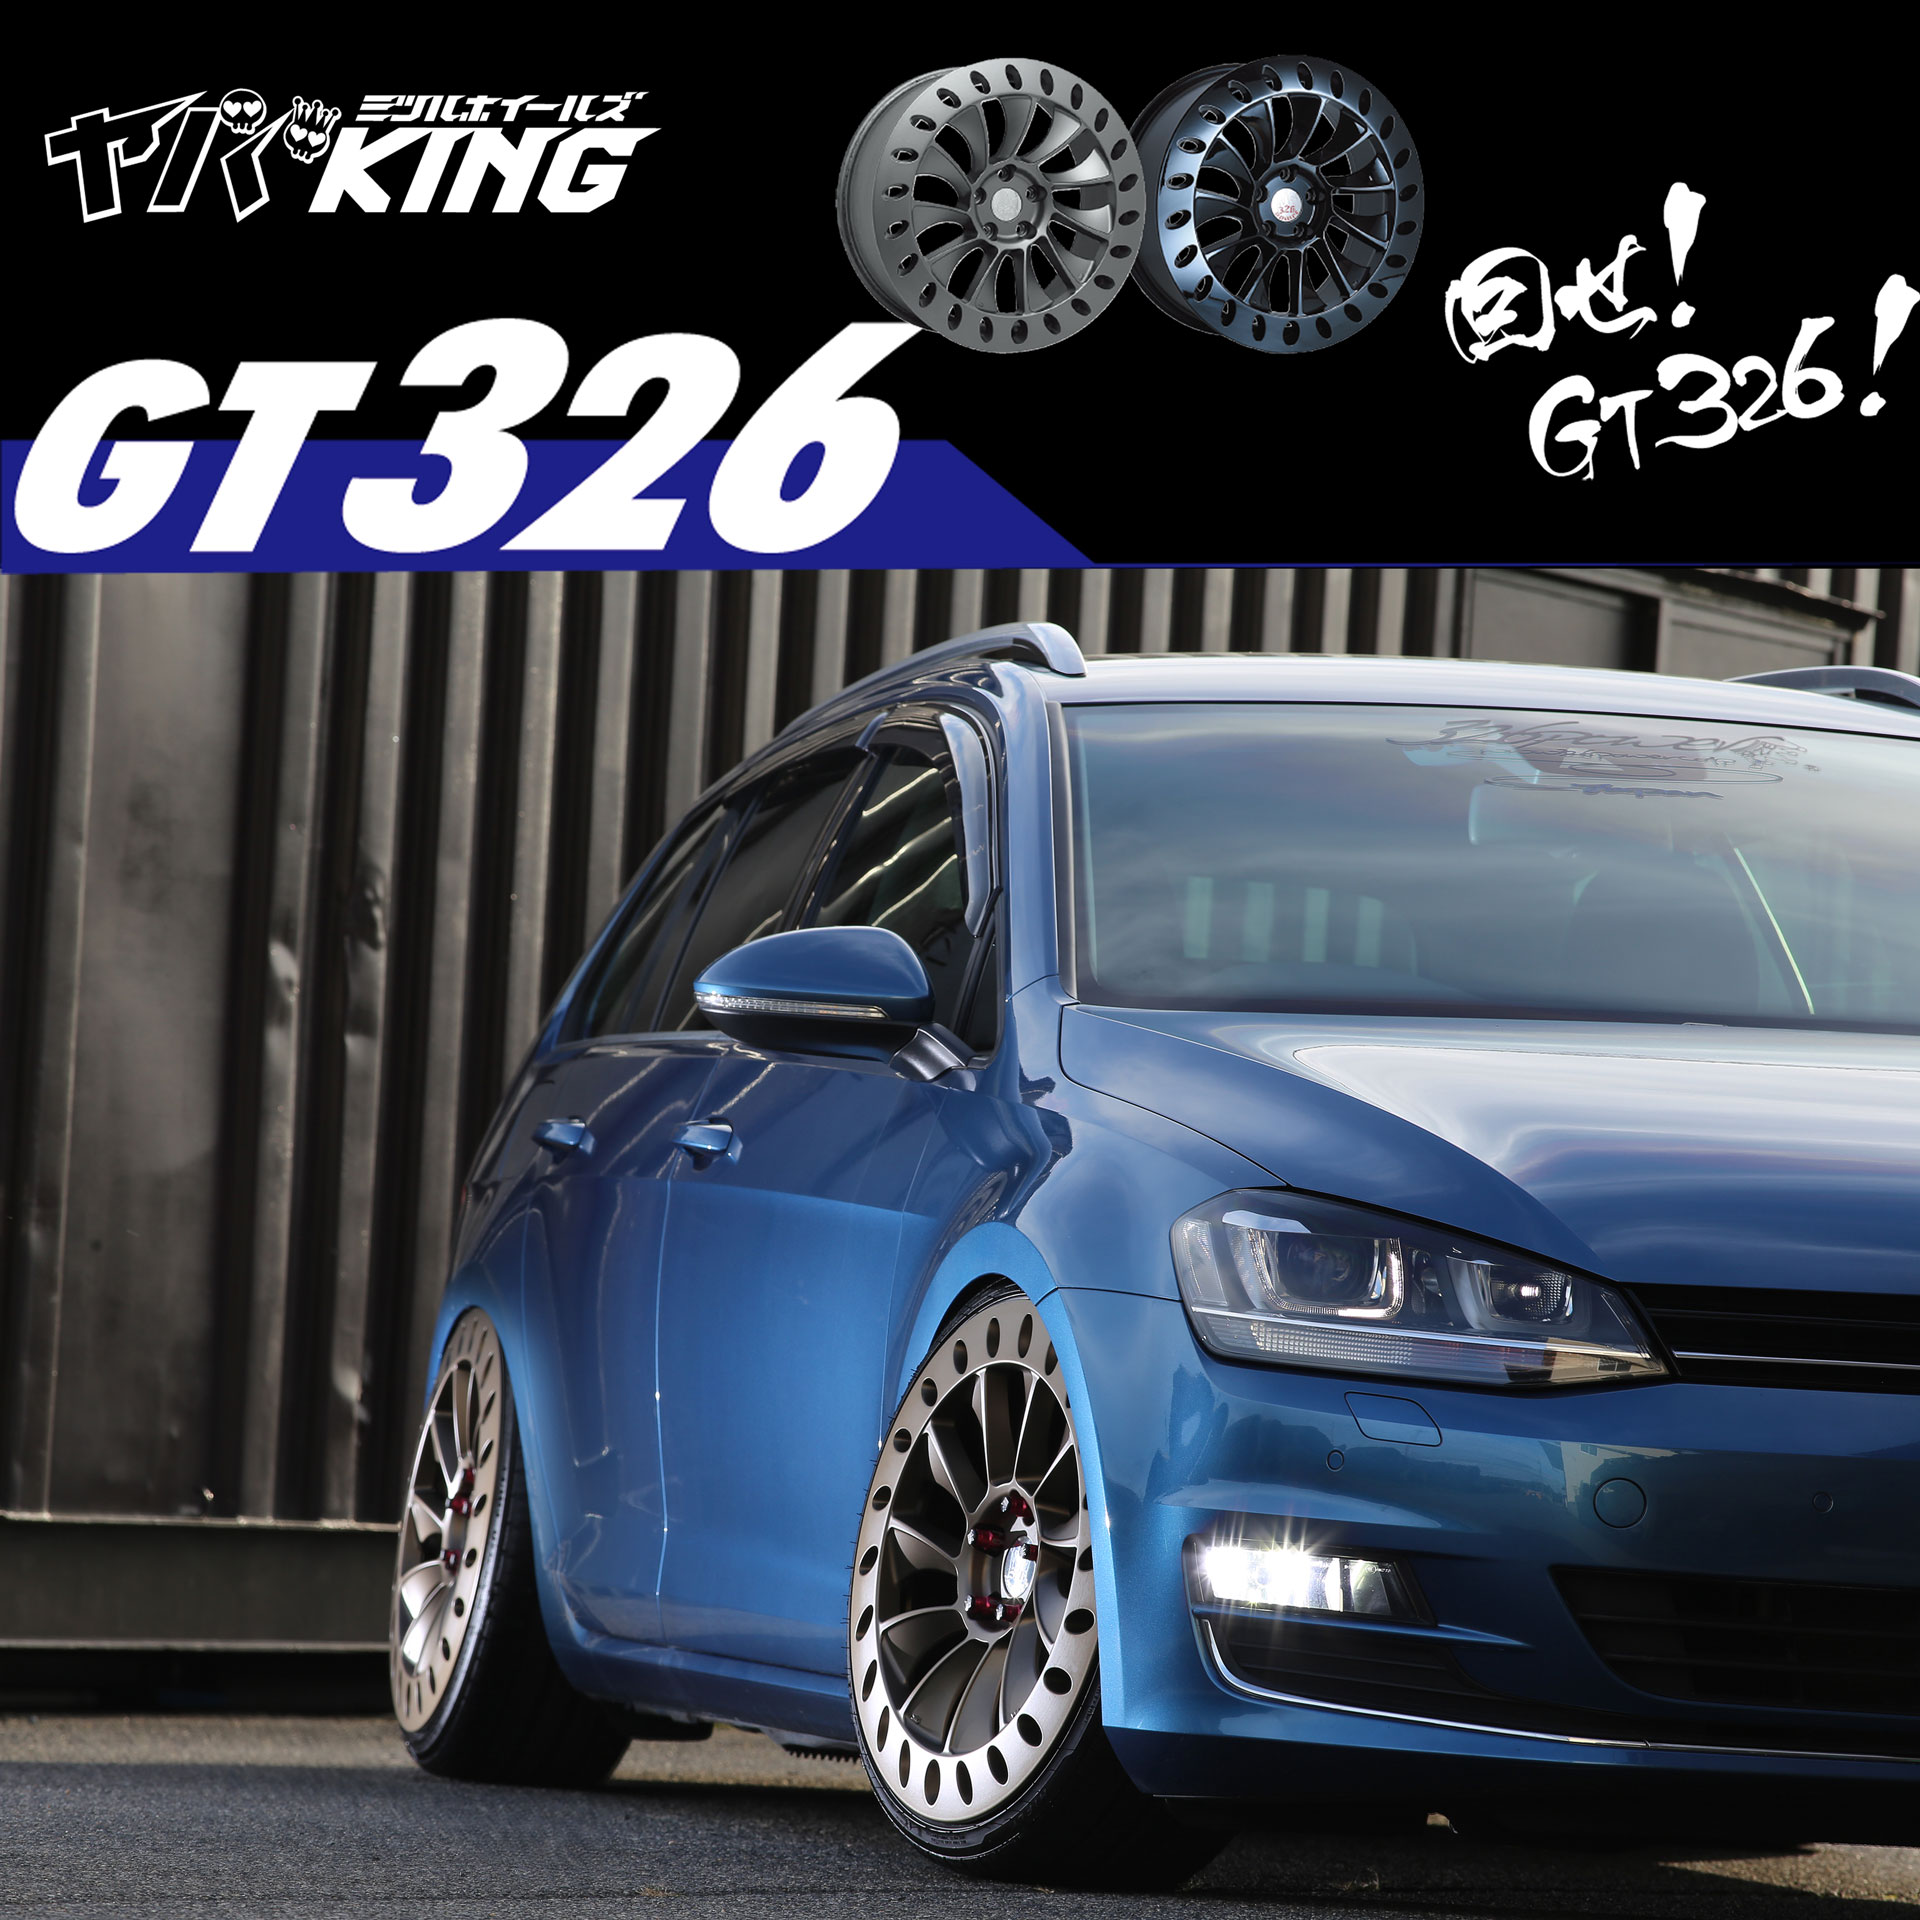 326 Power - Yaba King - GT326 Wheels